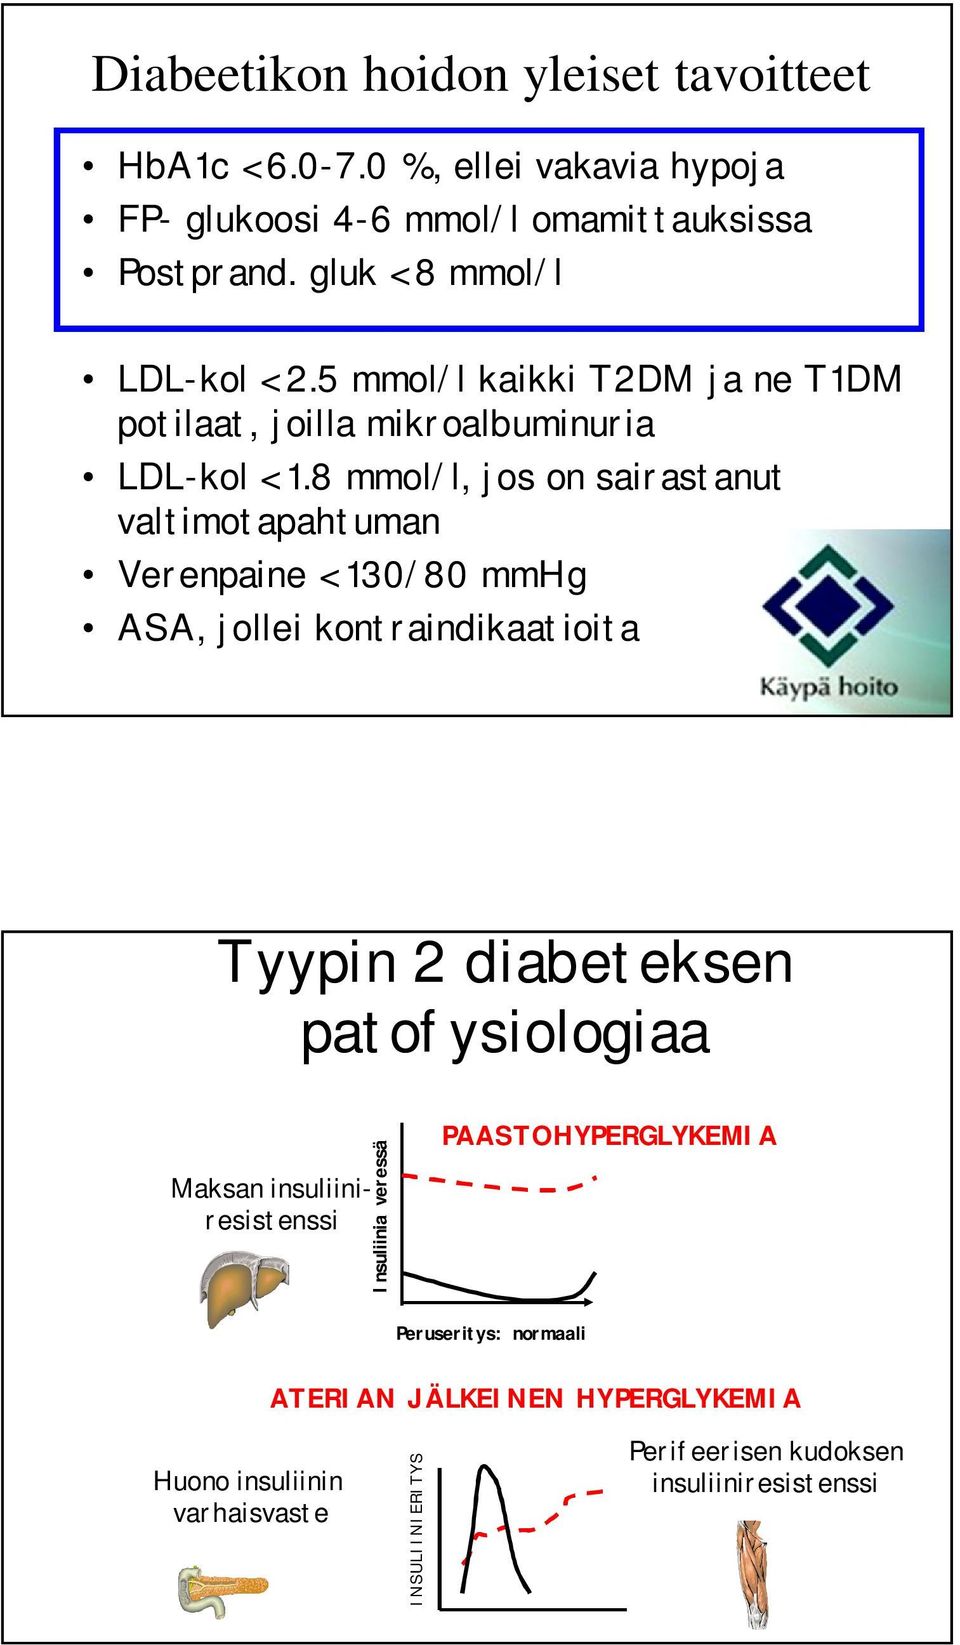 8 mmol/l, jos on sairastanut valtimotapahtuman Verenpaine < 130/80 mmhg ASA, jollei kontraindikaatioita Tyypin 2 diabeteksen patofysiologiaa